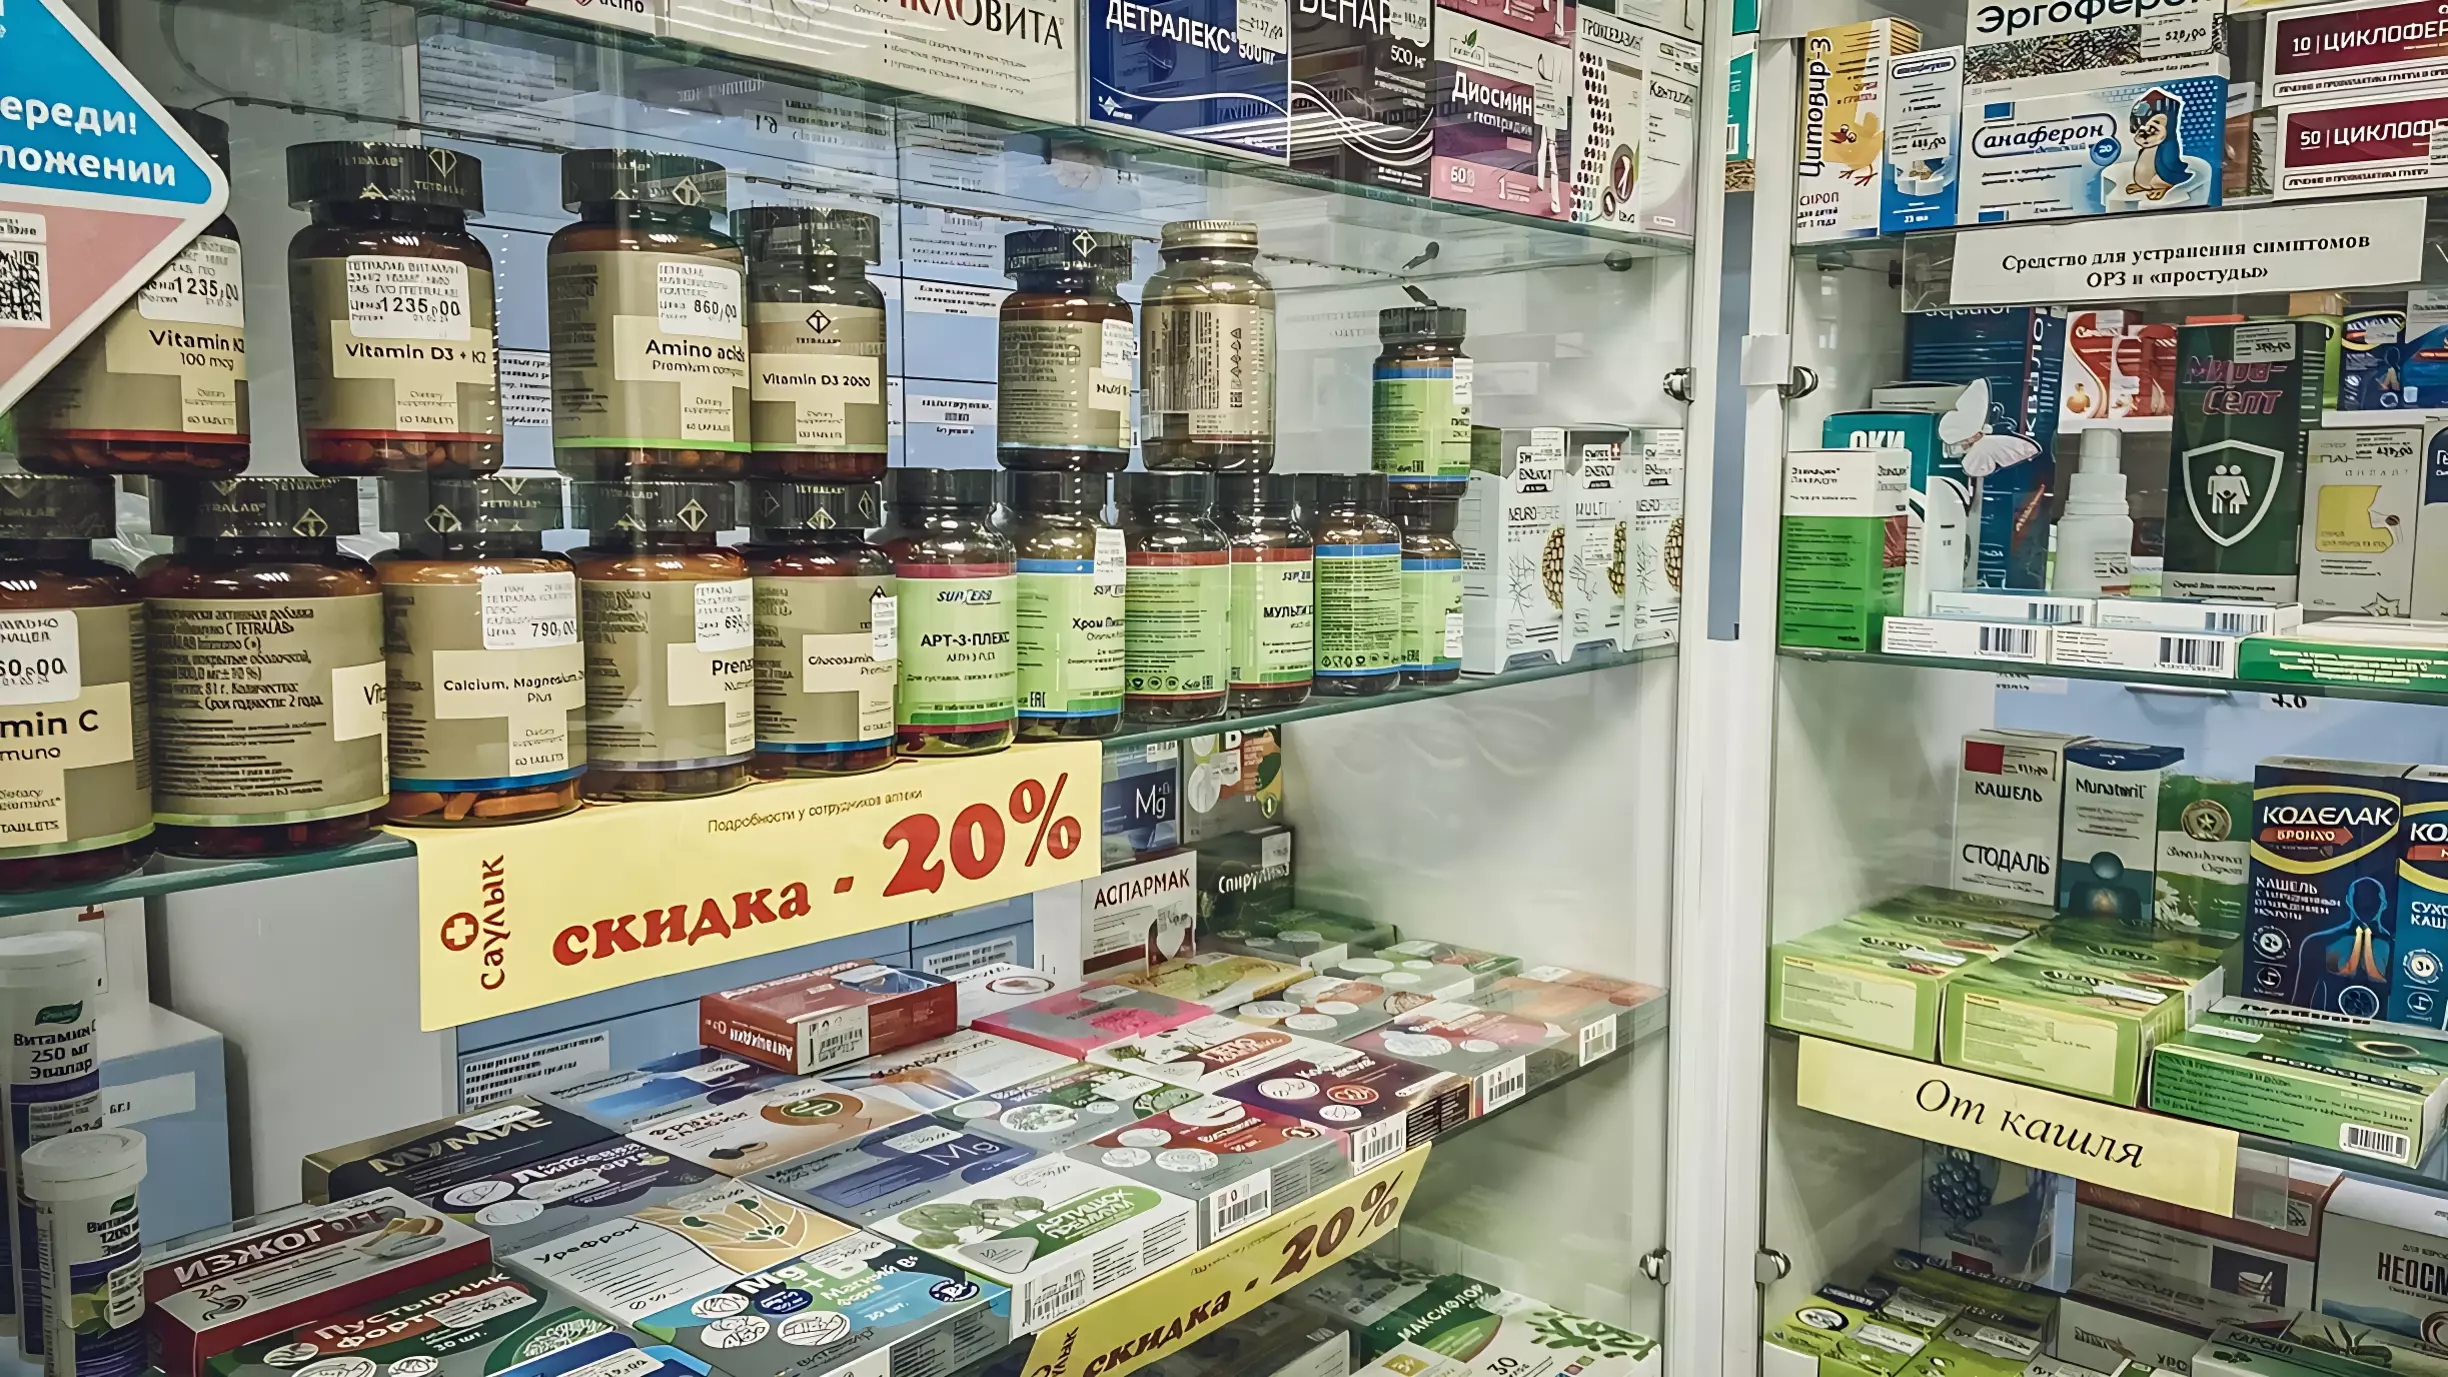 Кризис особенно сильно ударил по рынку доступных по цене медицинских препаратов.